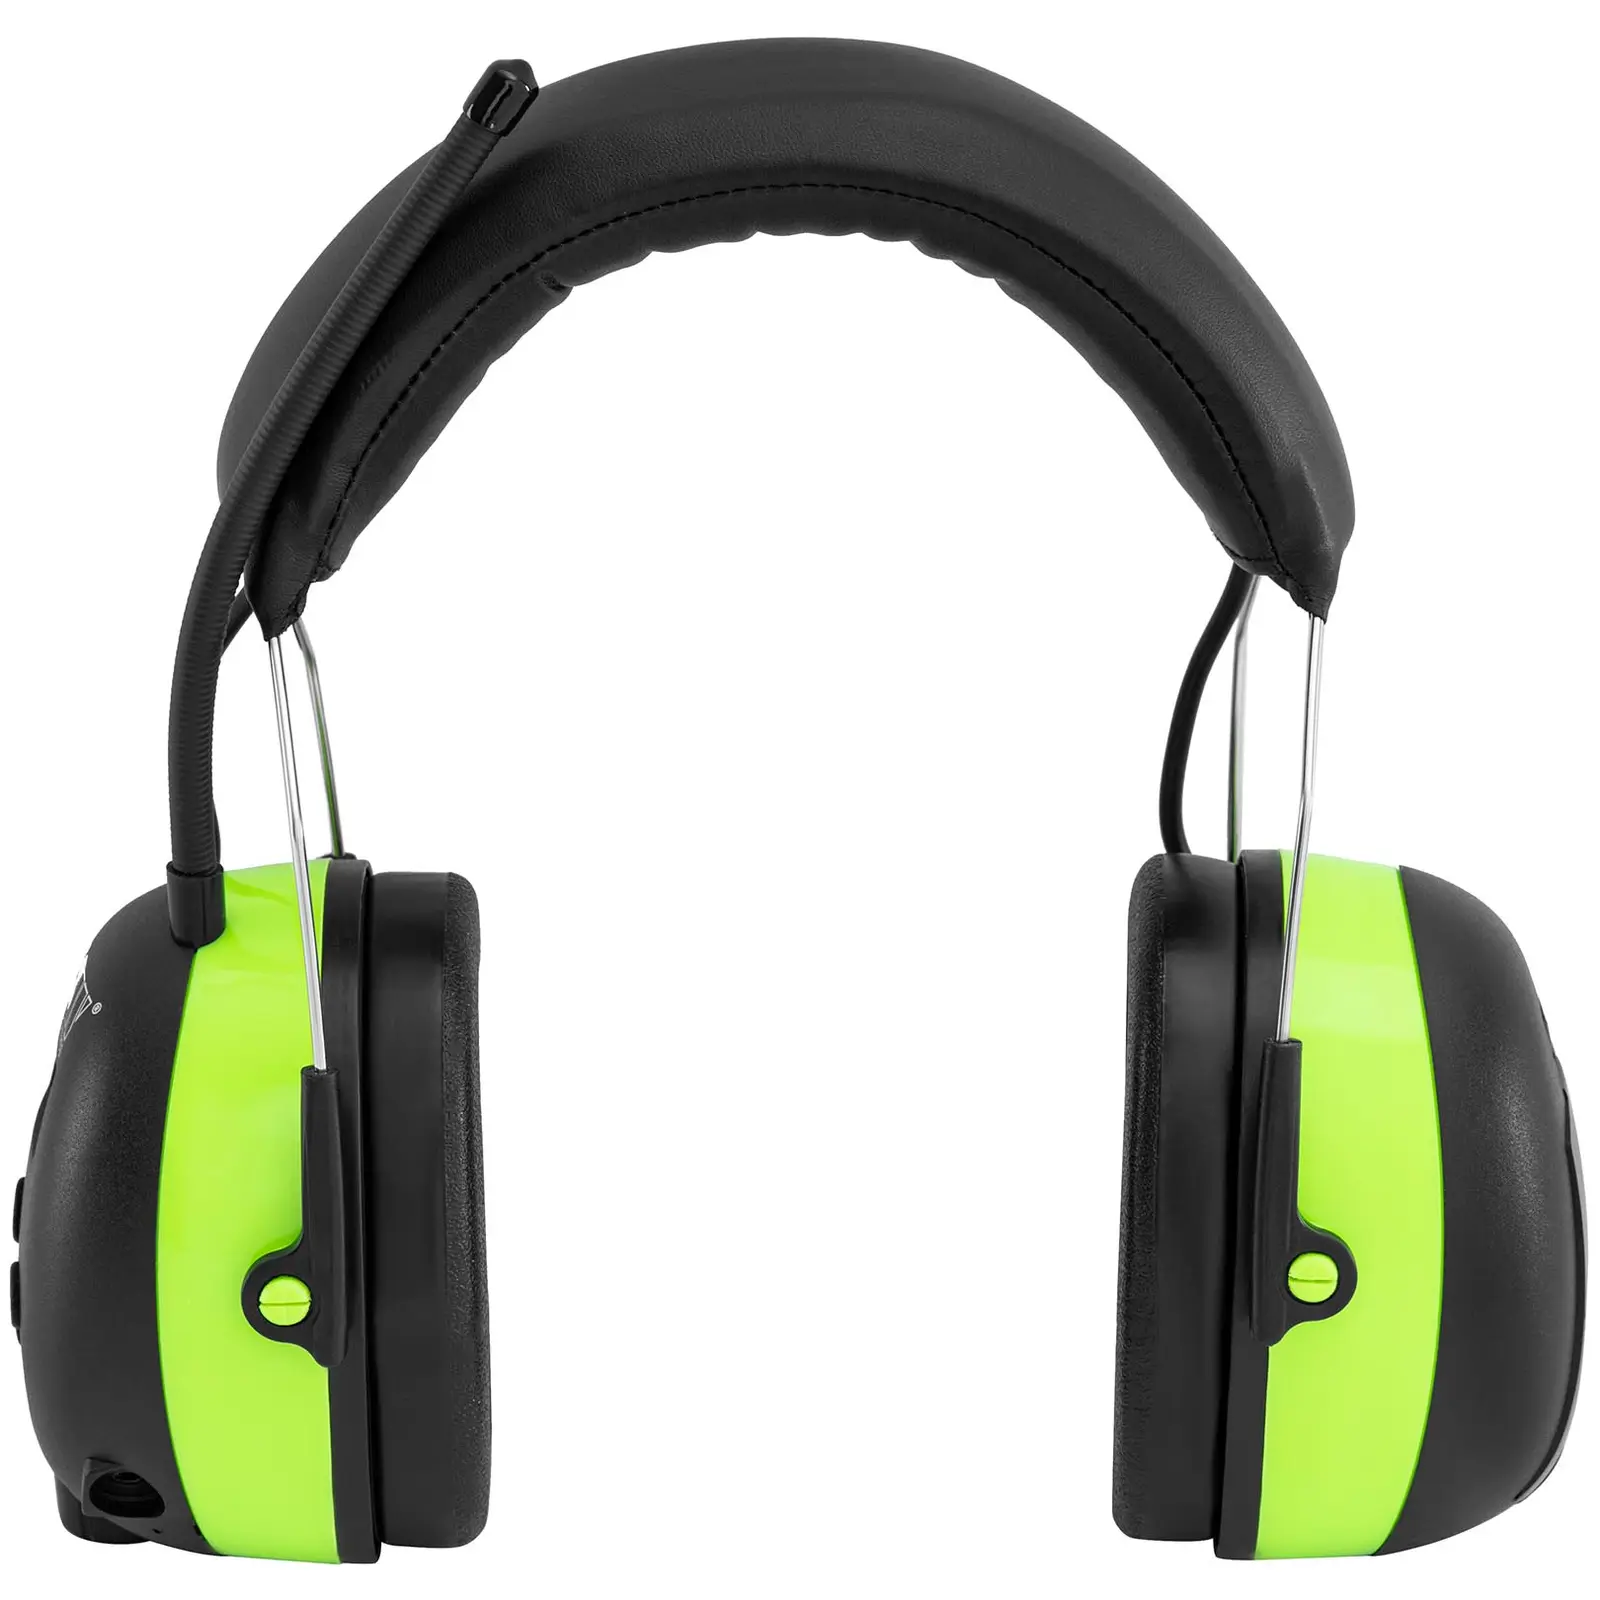 Słuchawki wygłuszające z Bluetooth - mikrofon - wyświetlacz LCD - bateria - zielone